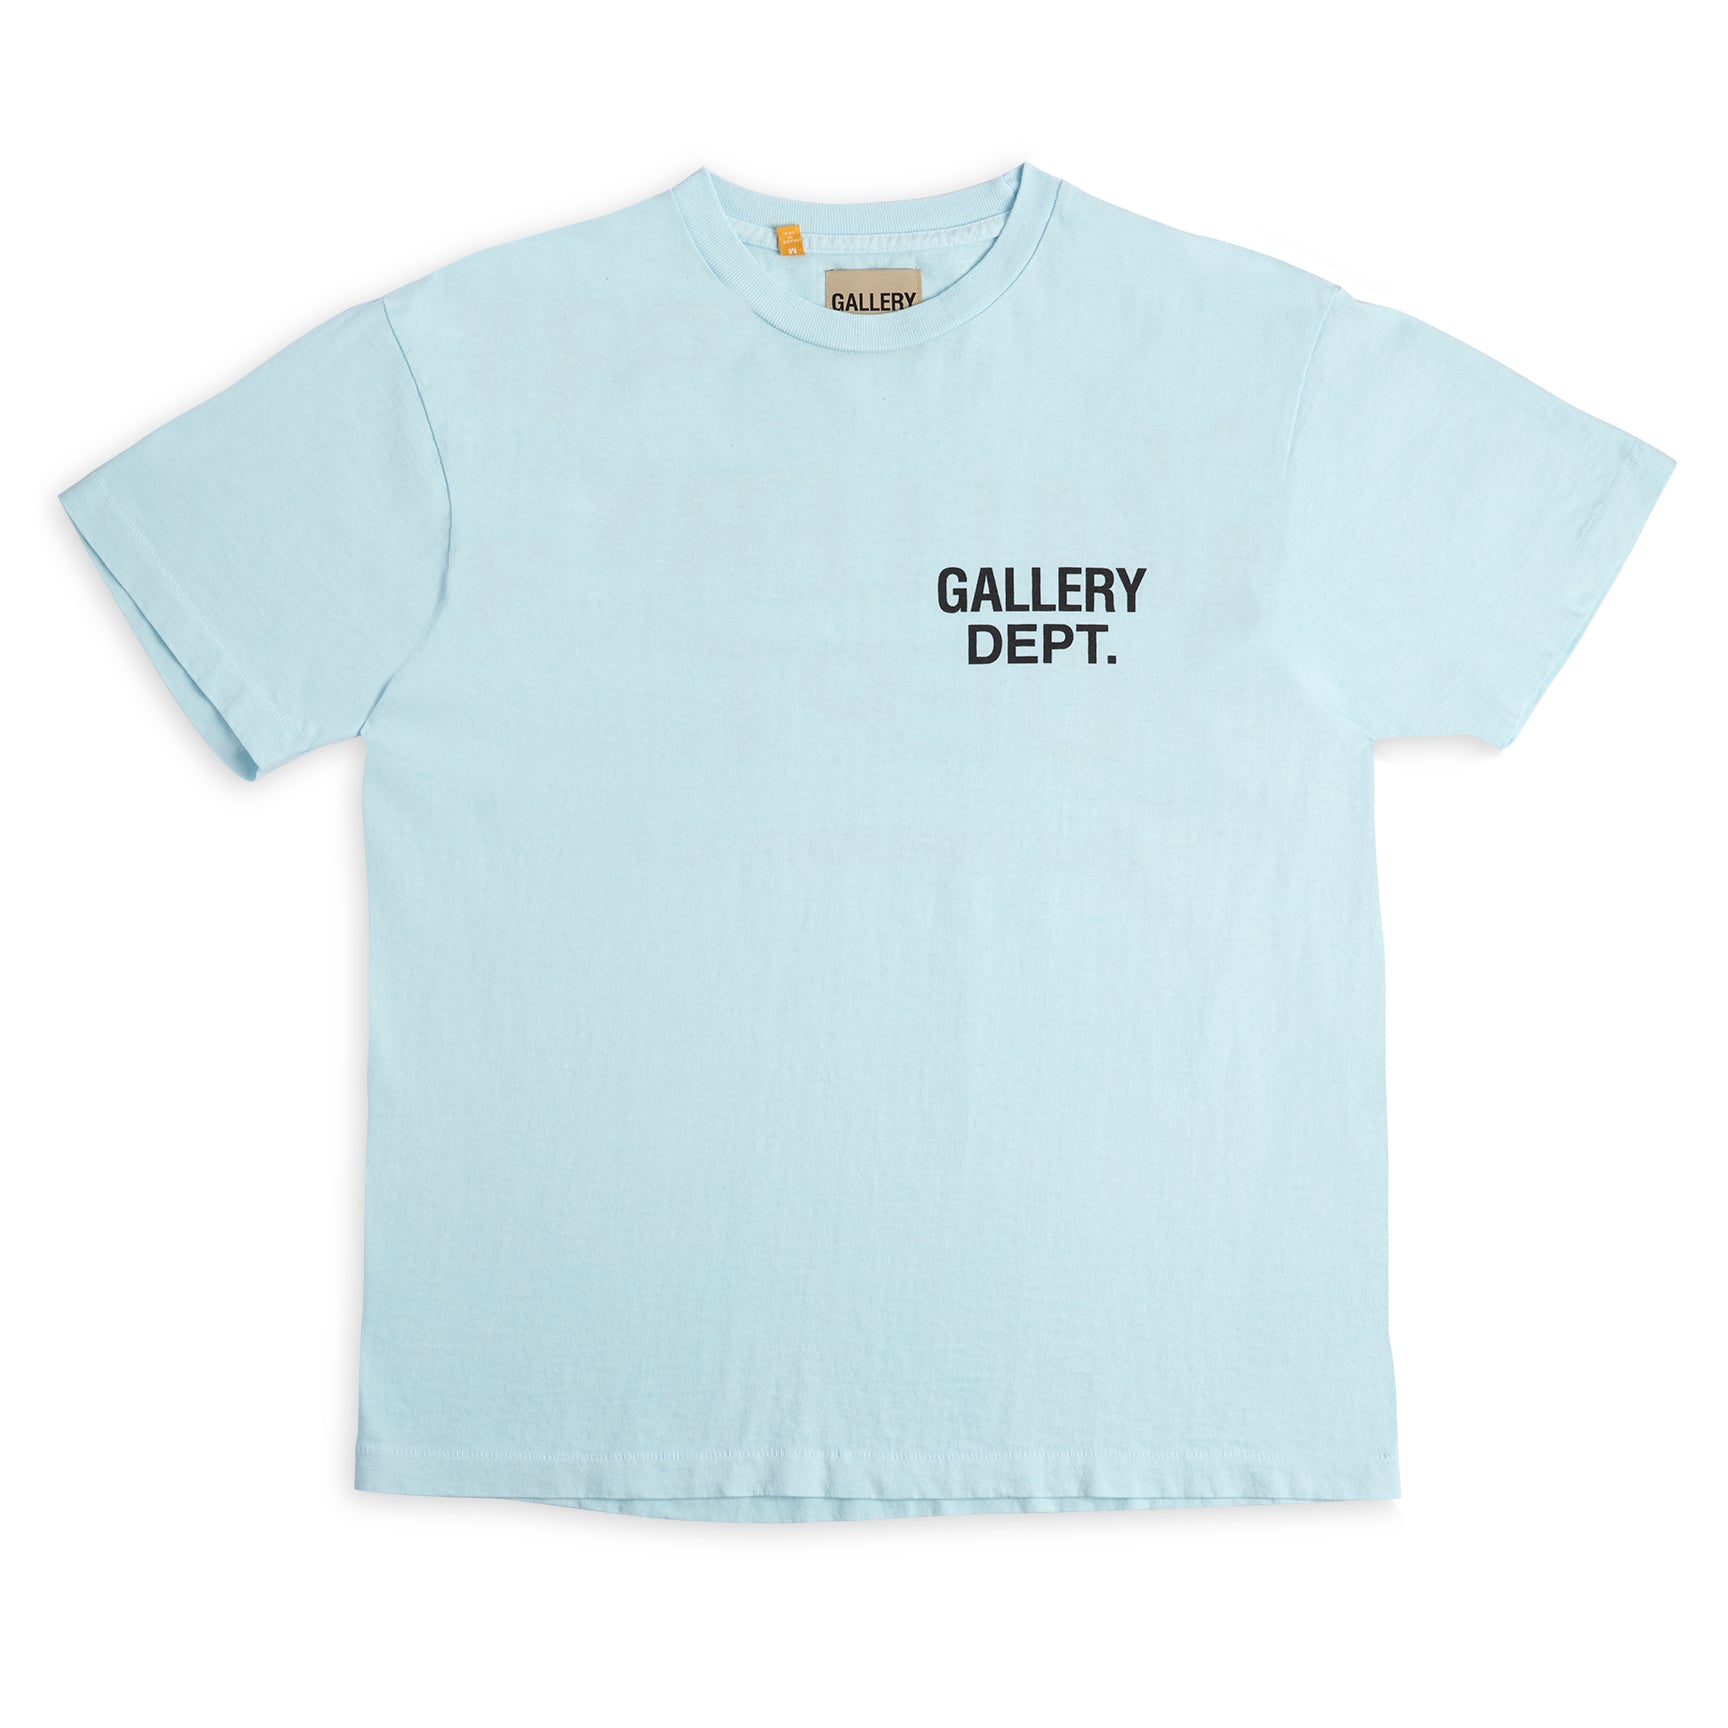 Gallery Dept. Souvenir T-shirt Baby Blue Men's - US